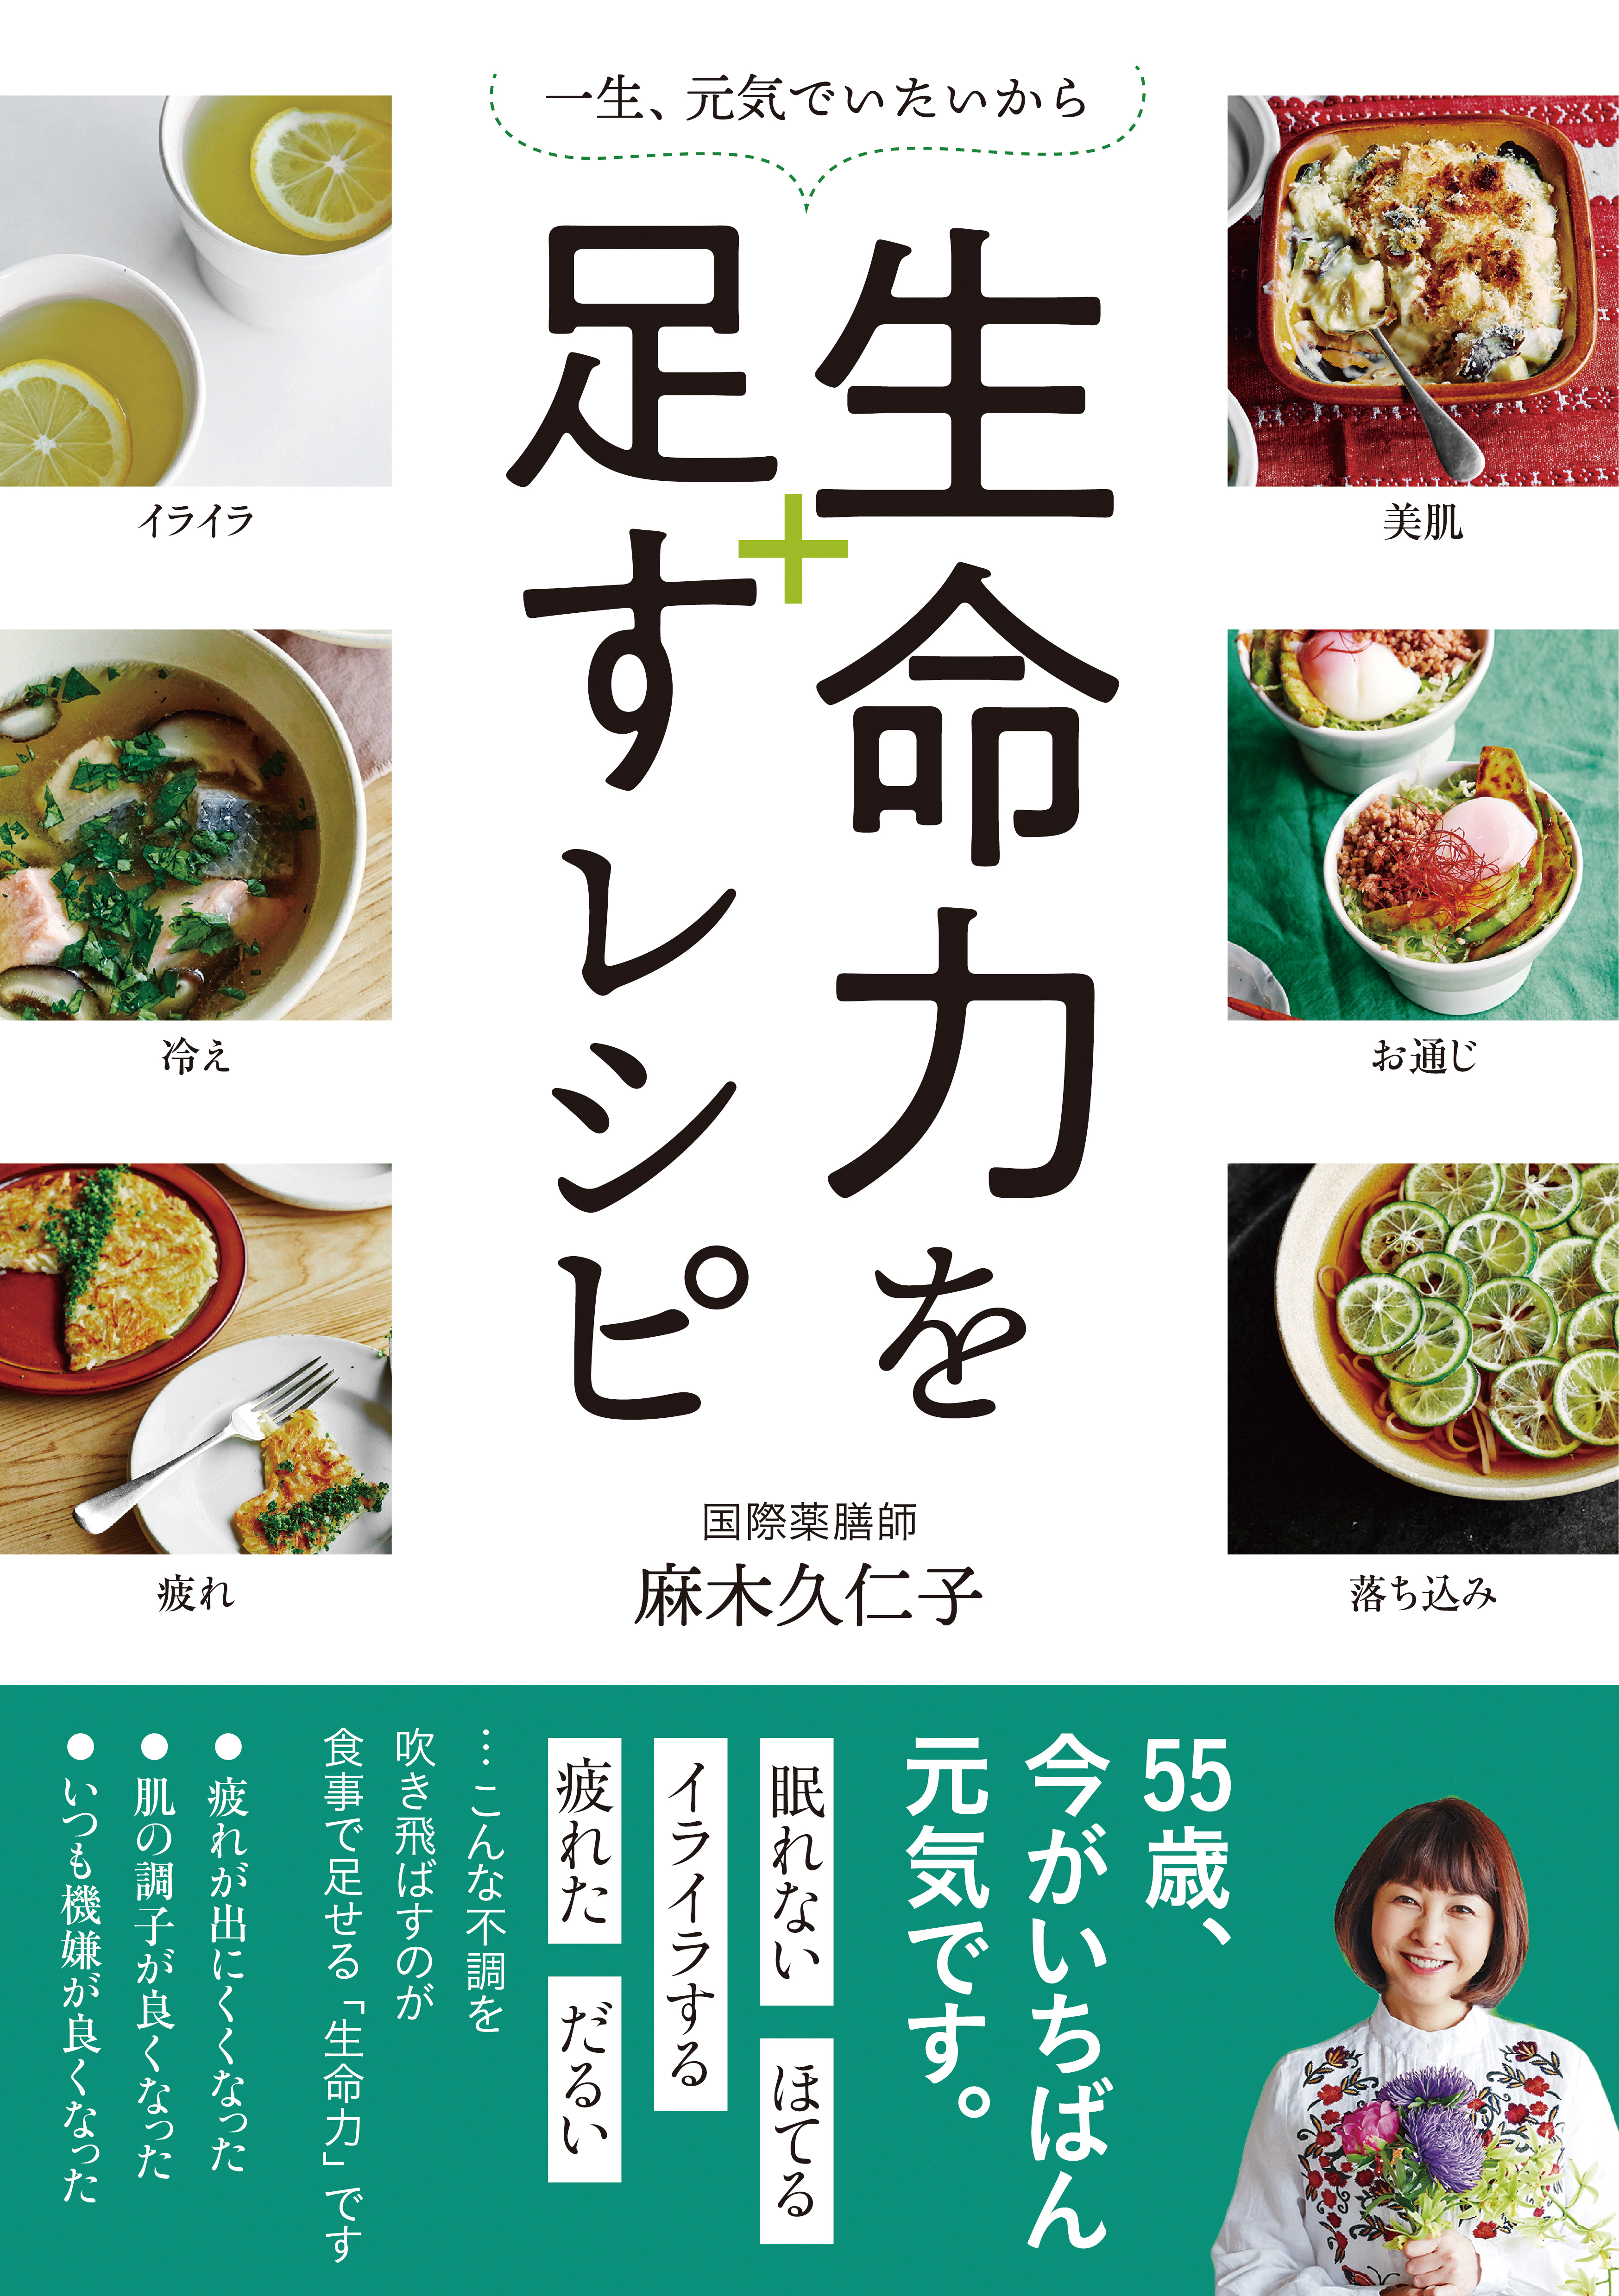 疲れた体の生命力を補う薬膳レシピ「大和芋の味噌スープ」 127-H1-reimeiryoku.jpg